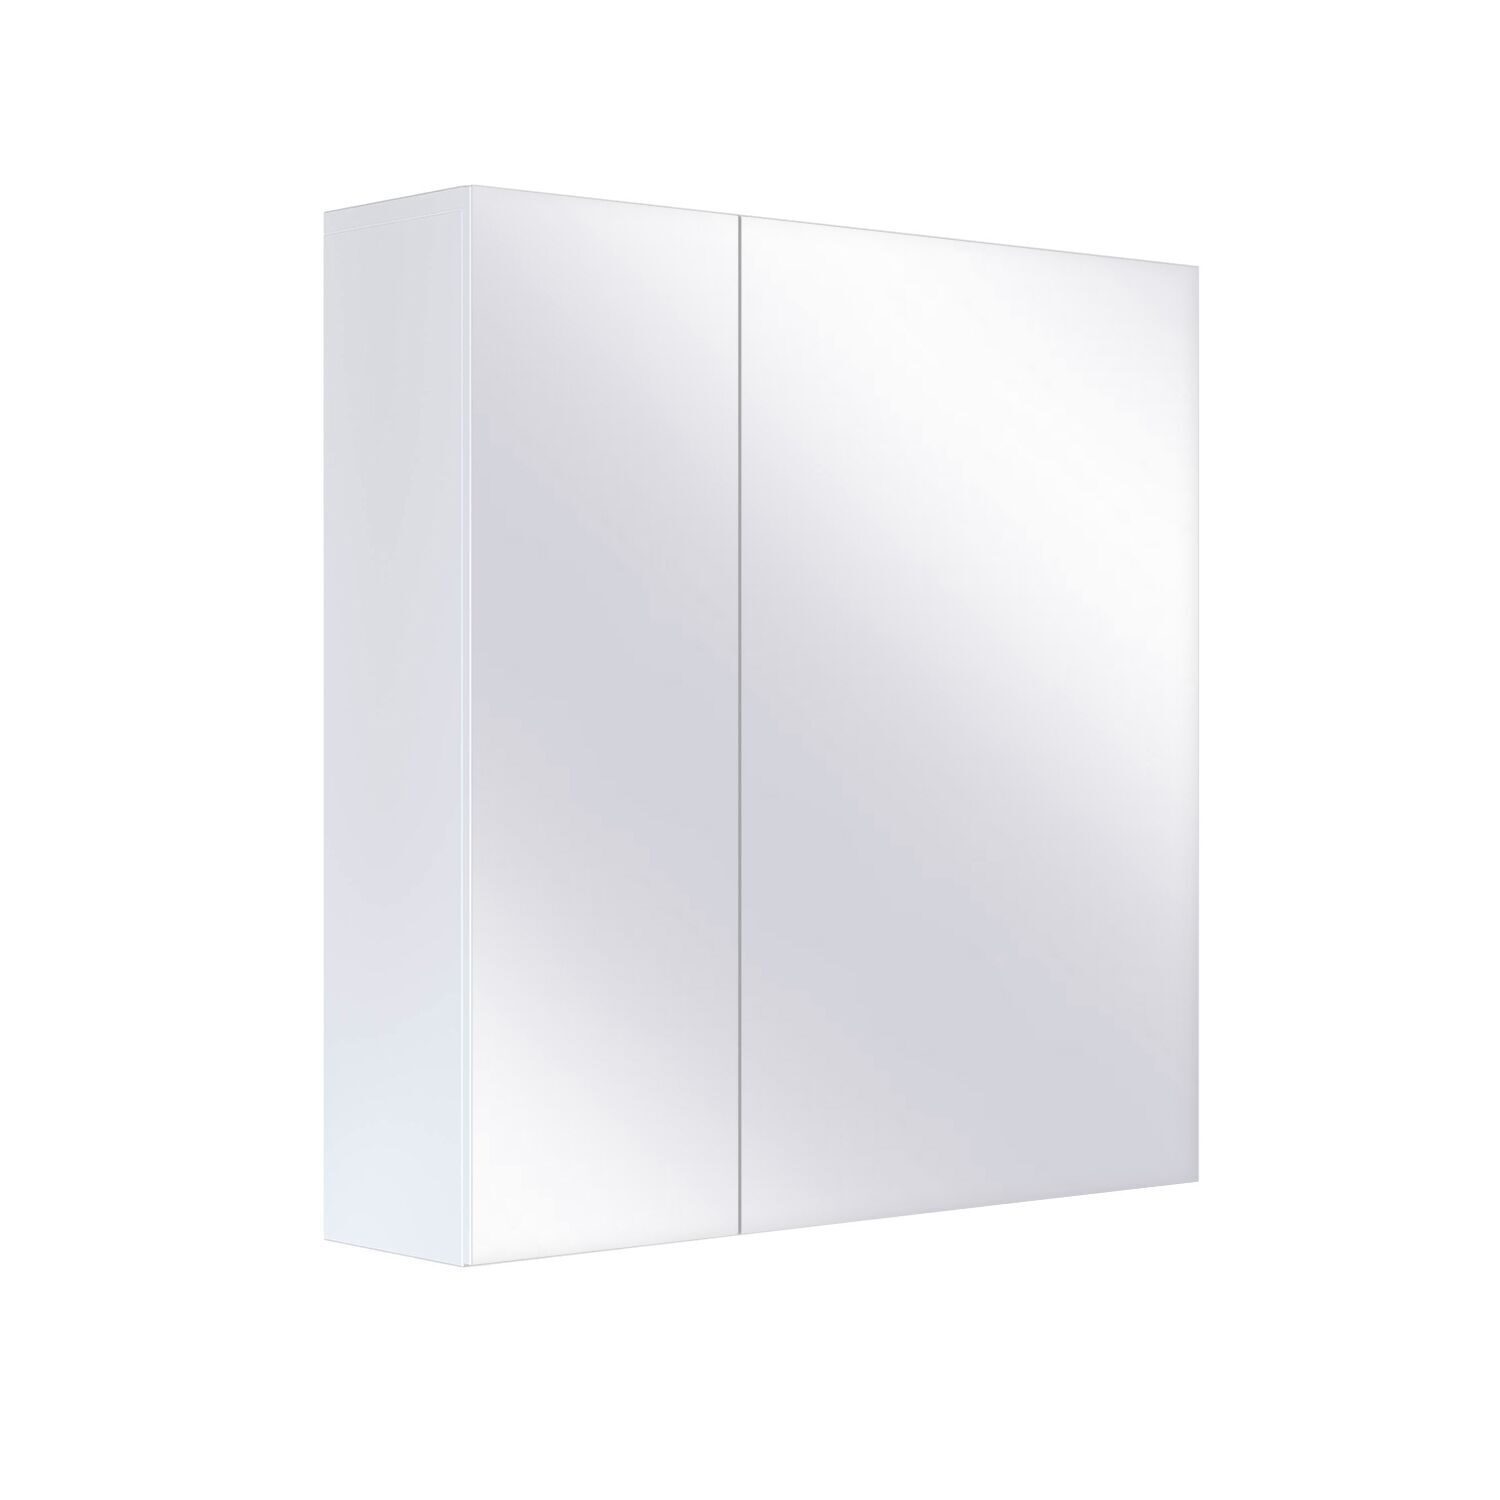 Шкаф зеркальный SanStar Универсальный 70 без подсветки медицинский шкаф практик мд 2 1670 ss s26199203001